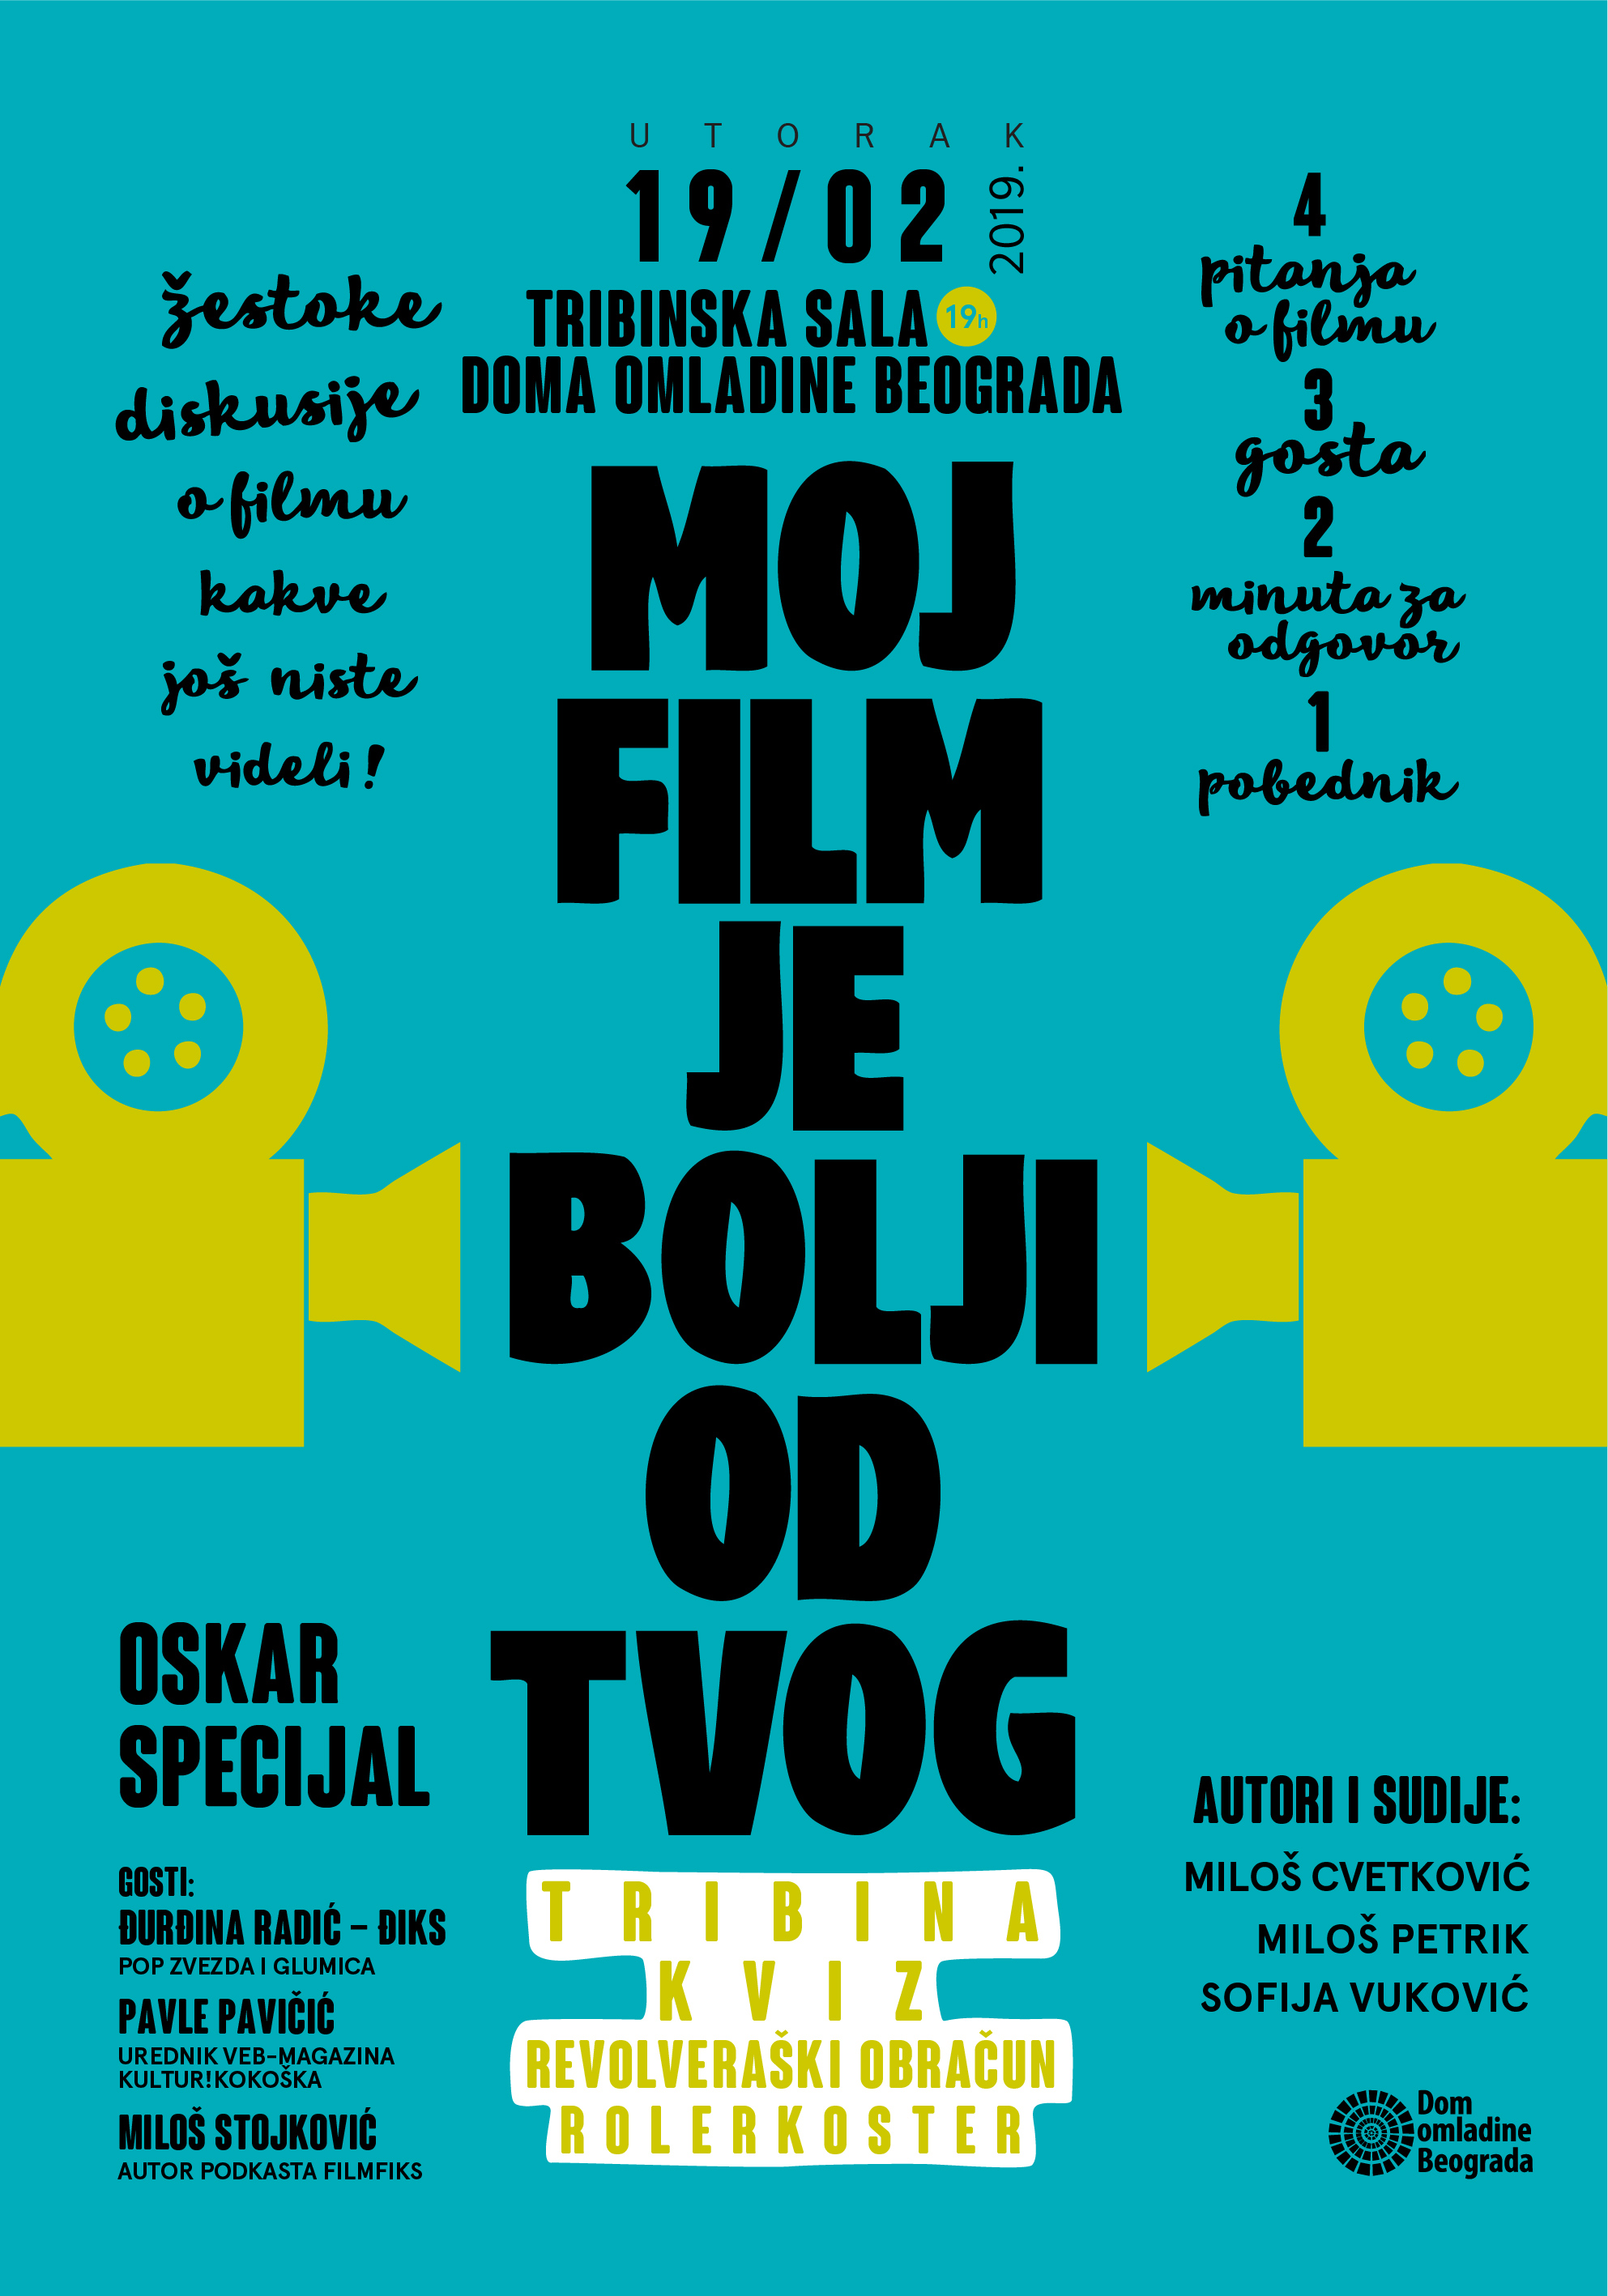 Kviz o poznatim filmovima: Oskar special